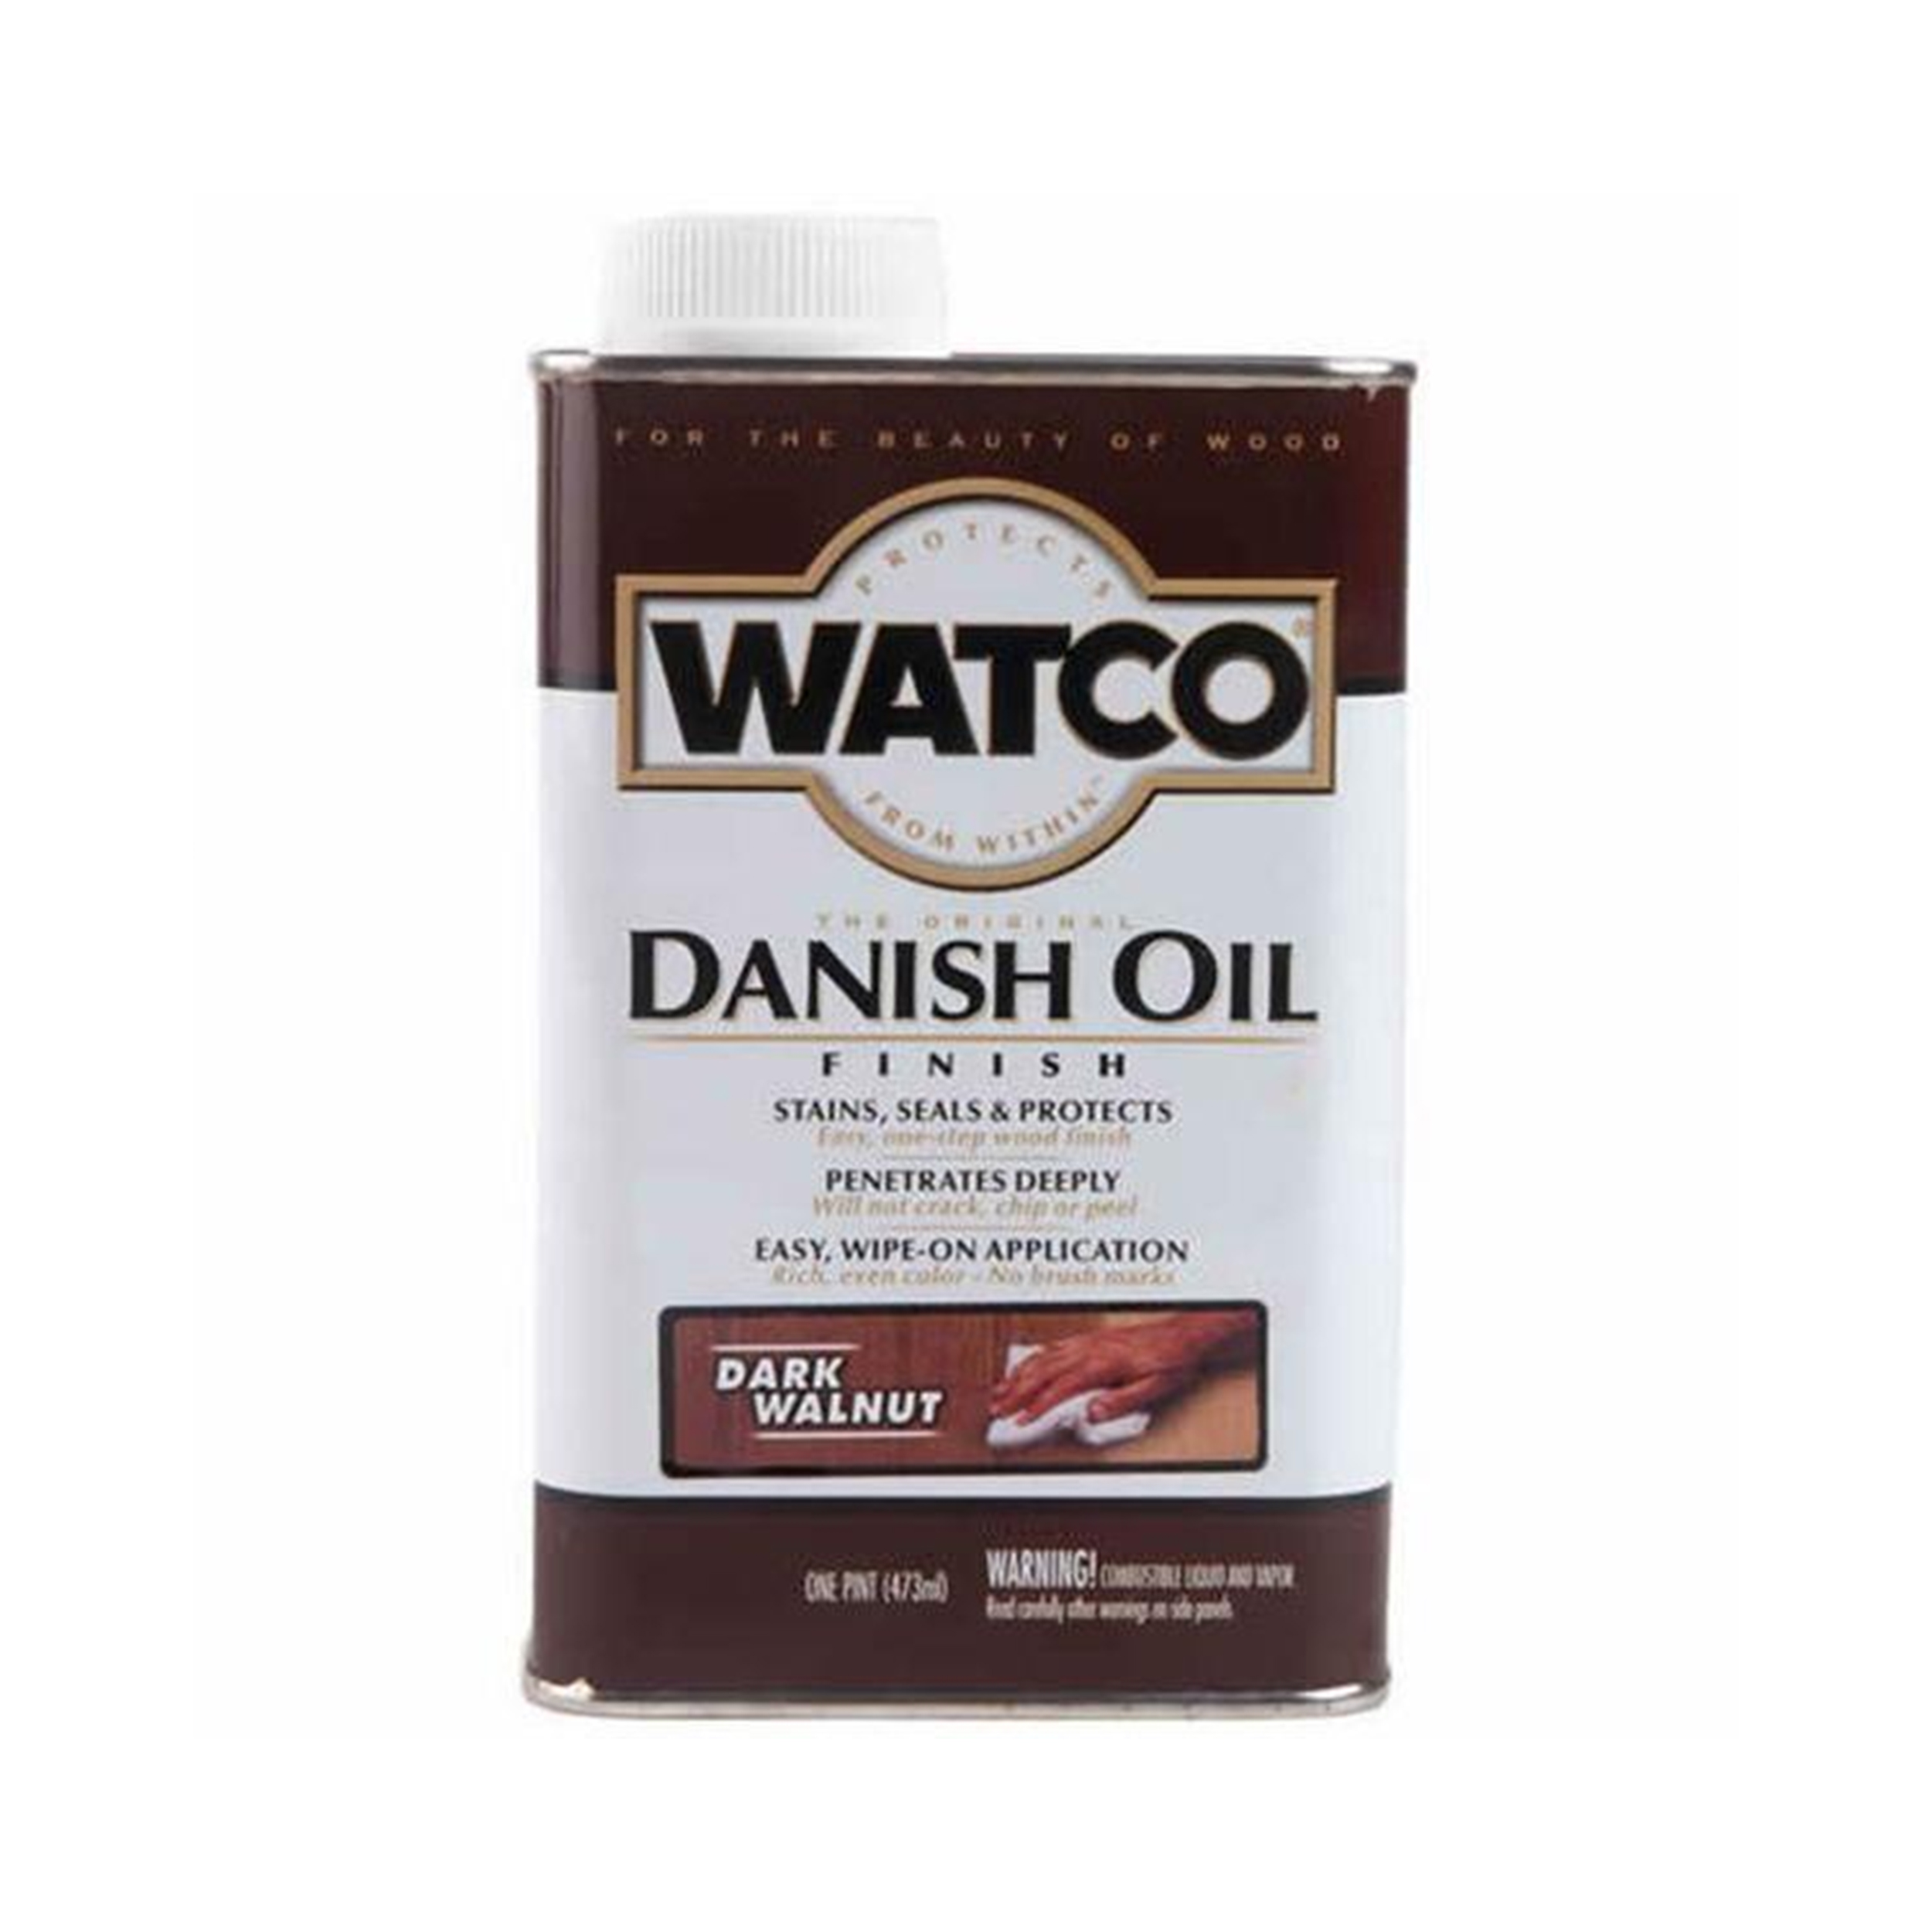 Danish Oil, Dark Walnut, Pint